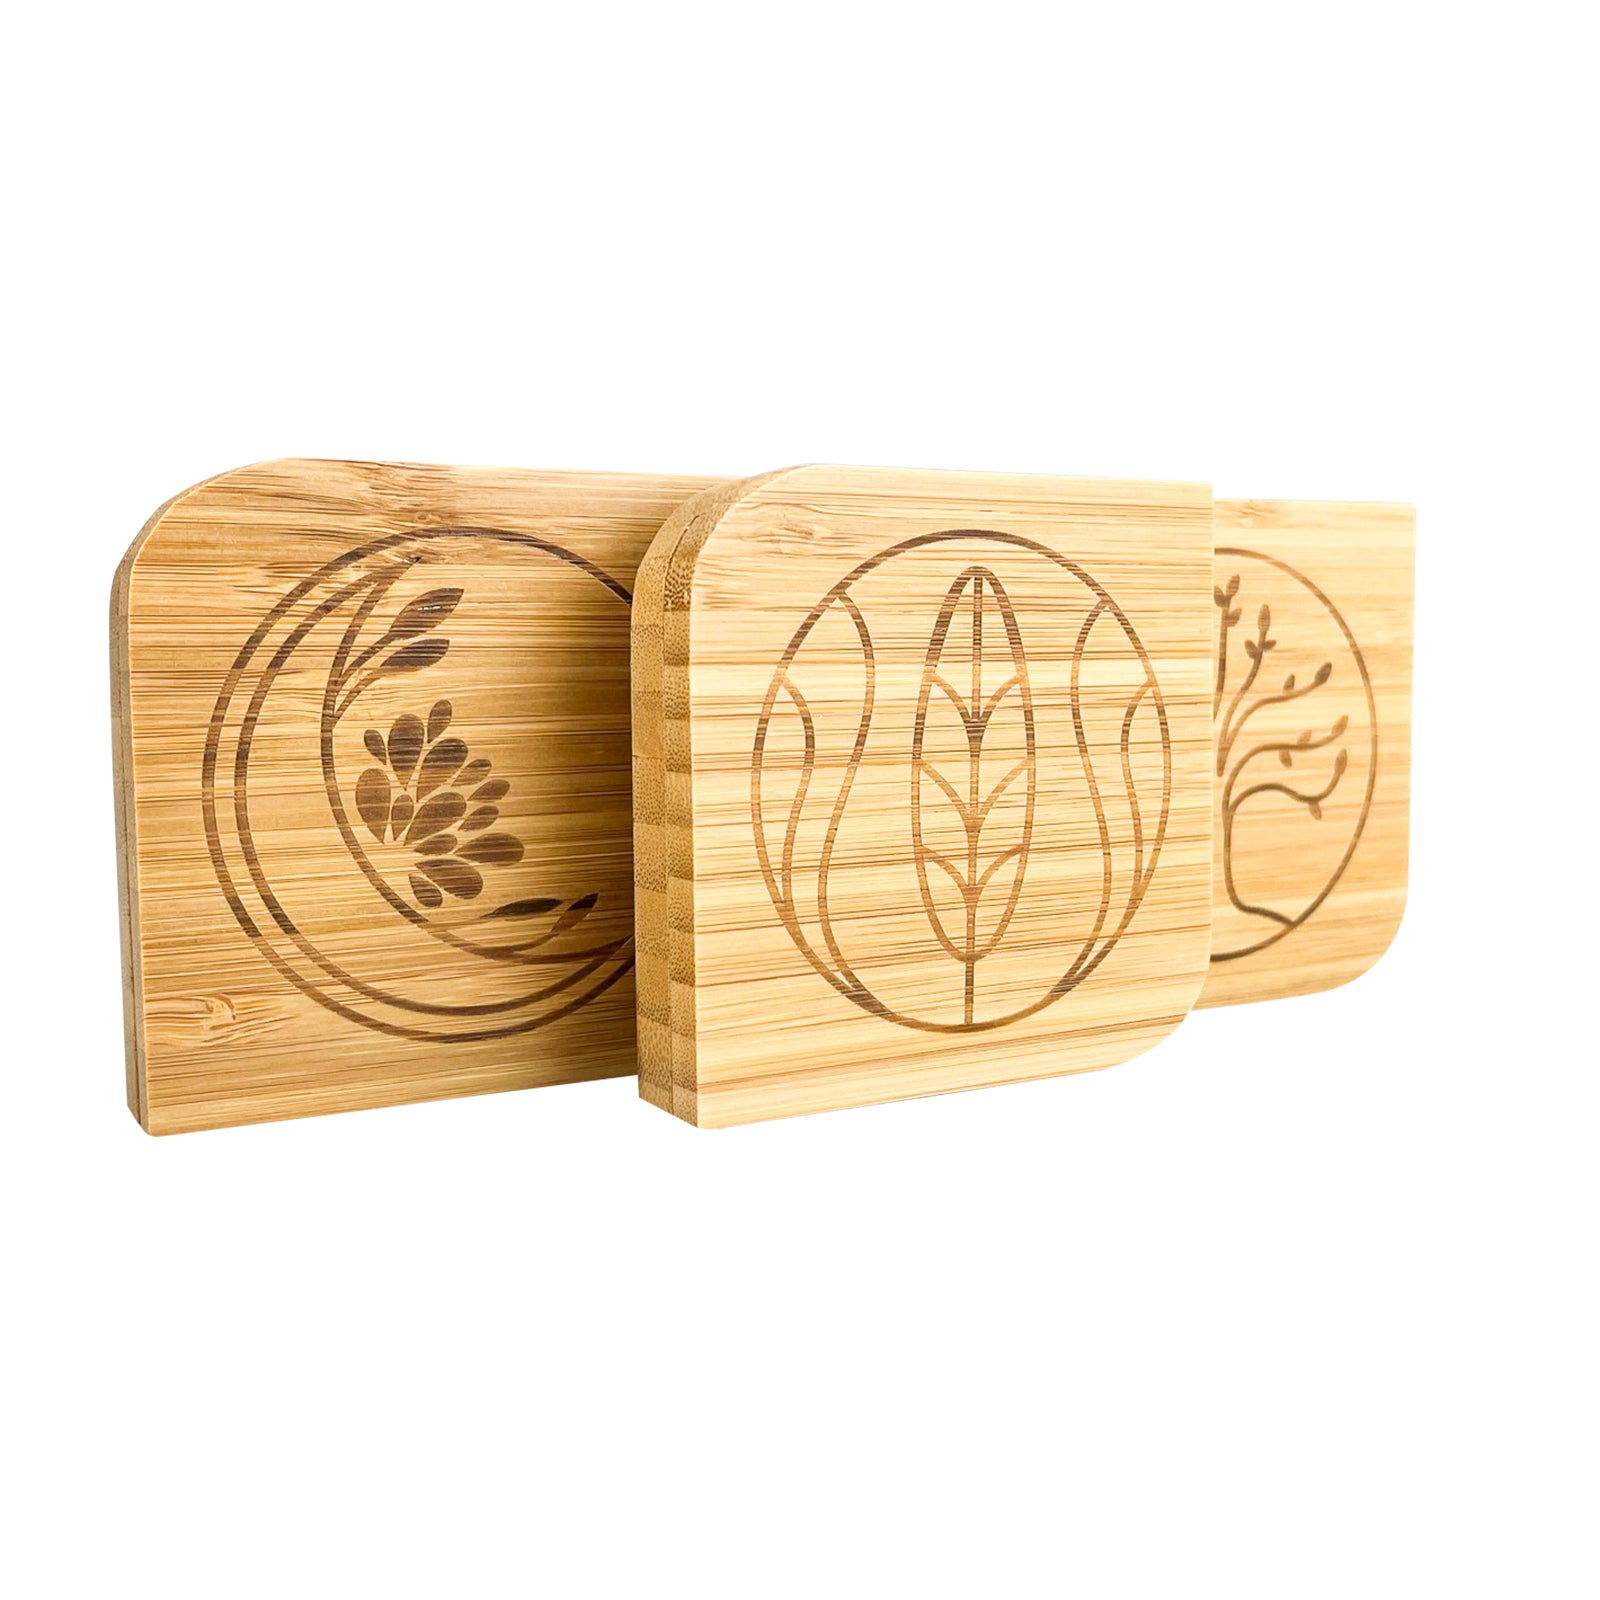 Puderdose aus Bambus mit Spiegel, 3 Stück mit verschiedenen Gravuren, mit herausnehmbarer Metallschale